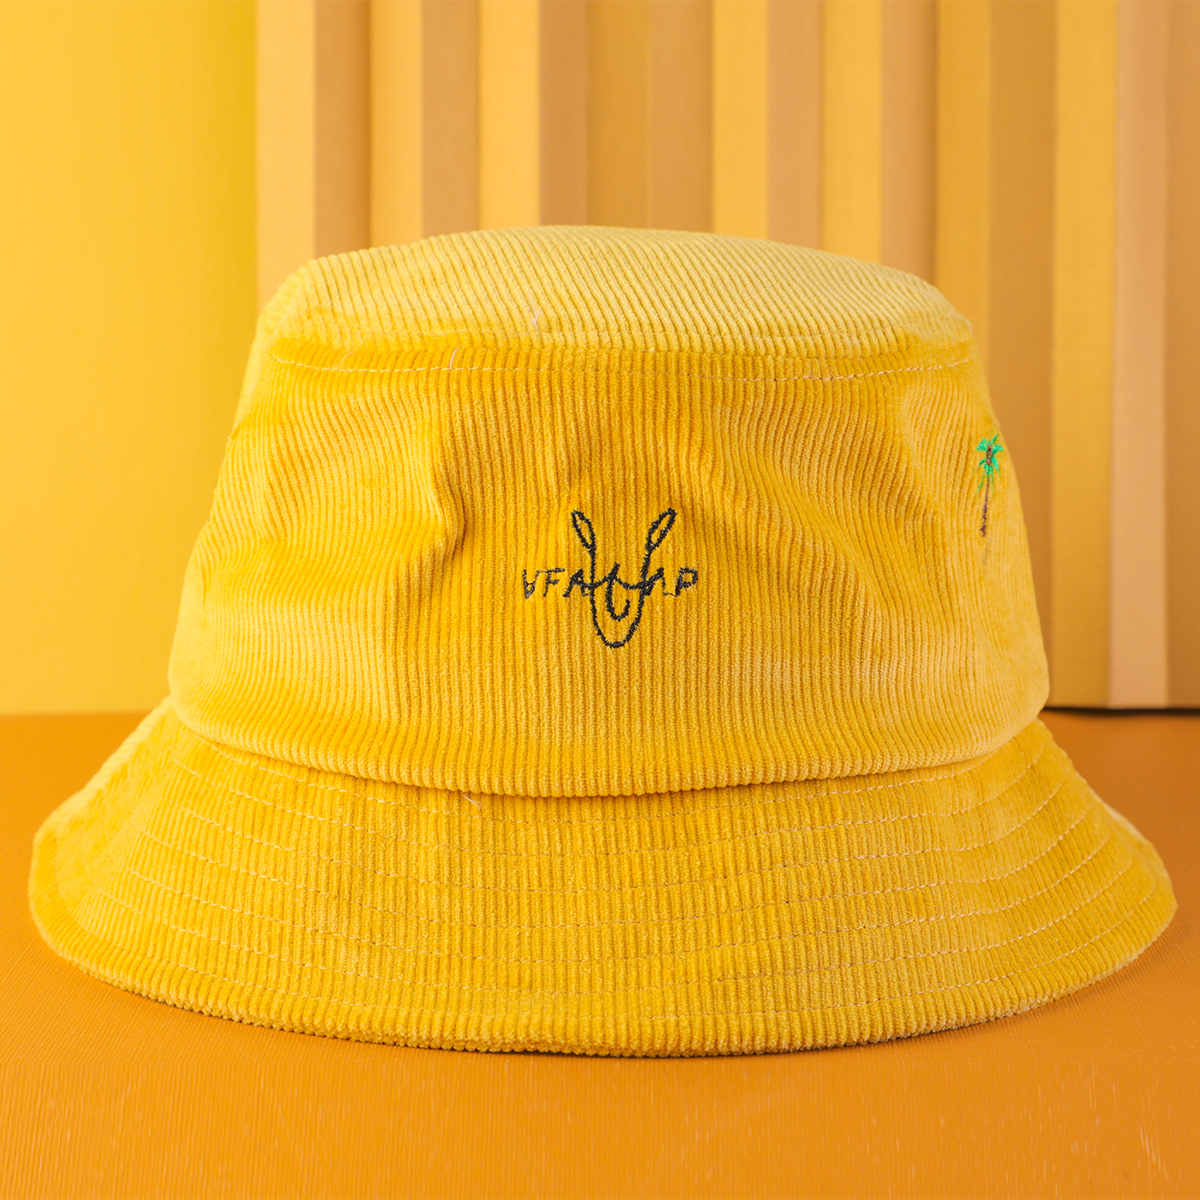 broderie vfa logo jaune velours côtelé seau chapeaux personnalisé